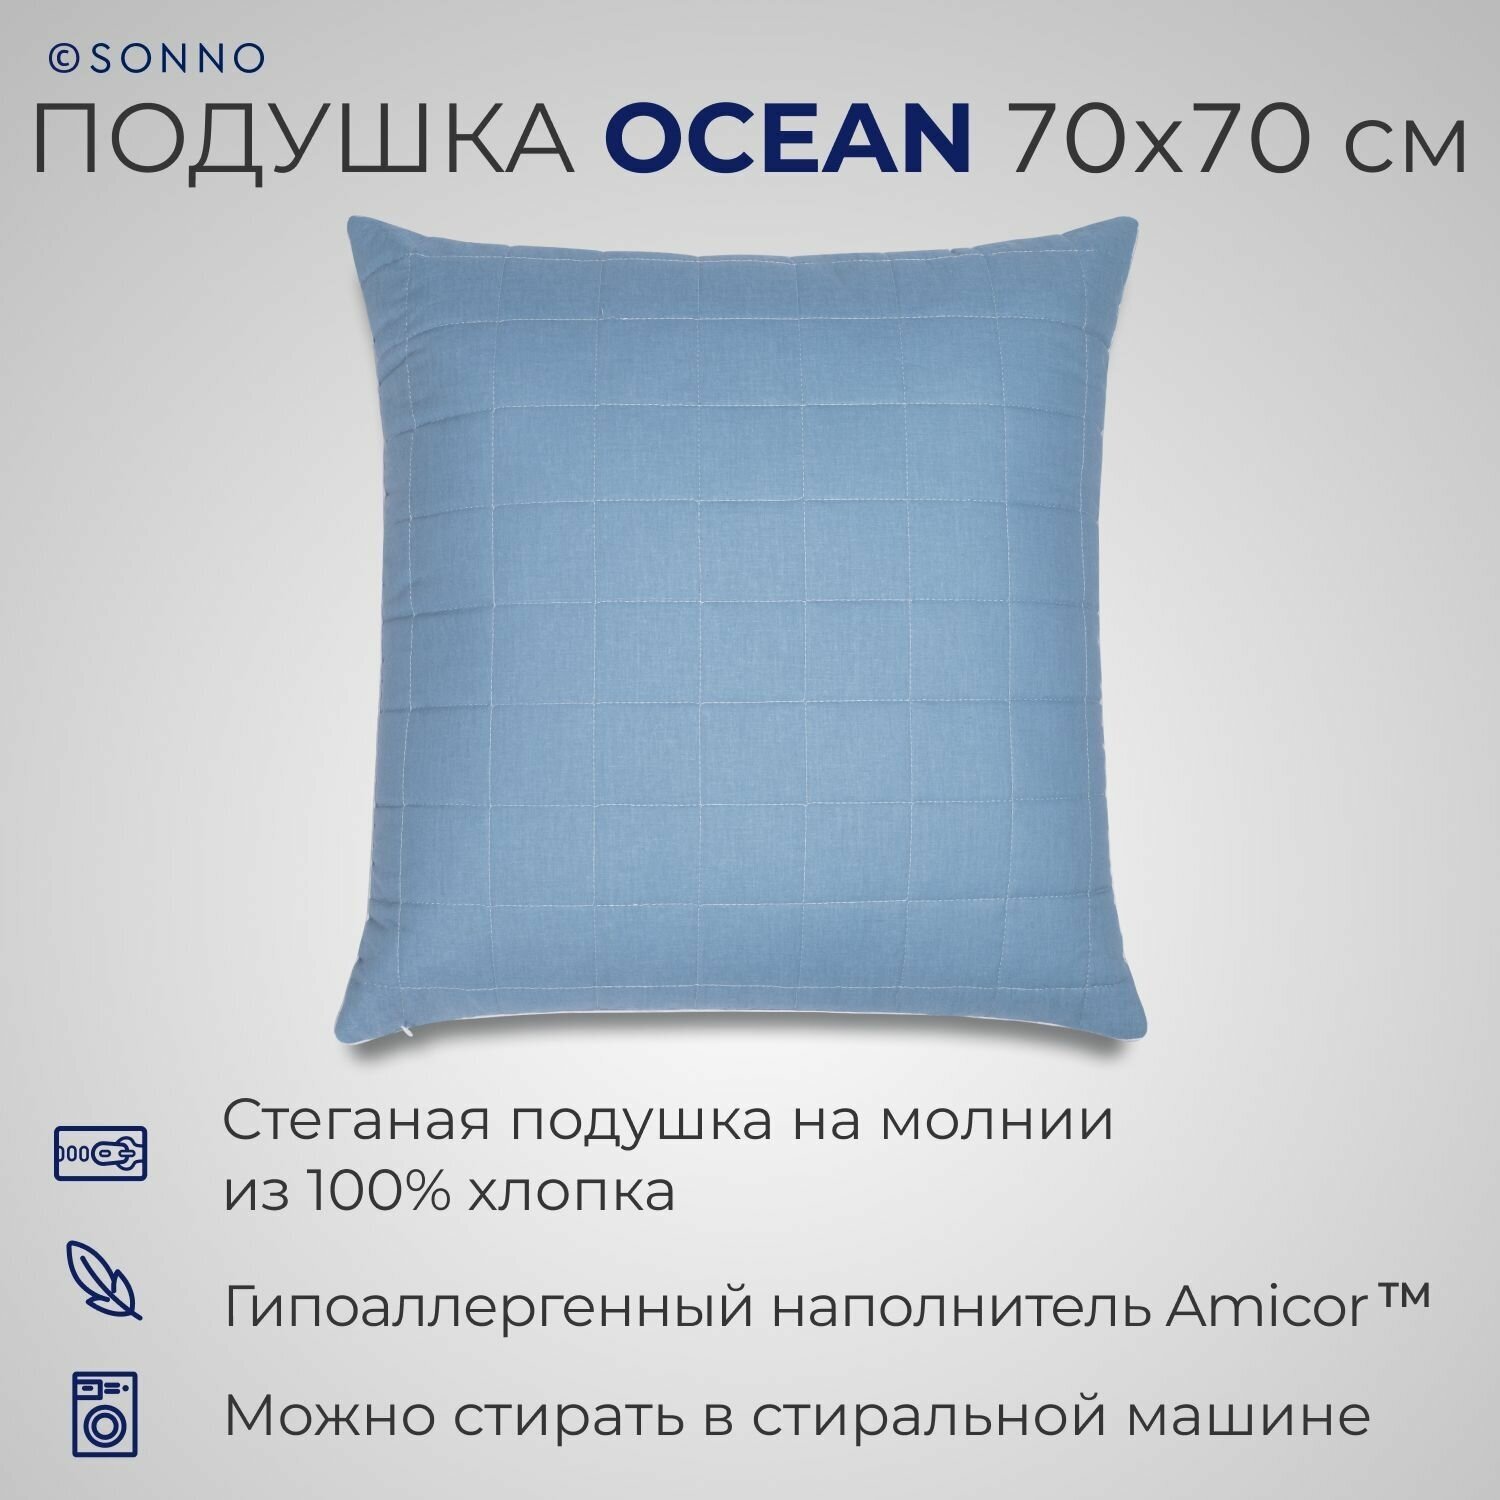 Подушка SONNO OCEAN гипоаллергенный наполнитель Amicor TM цвет Океанический голубой  Хлопок 100%